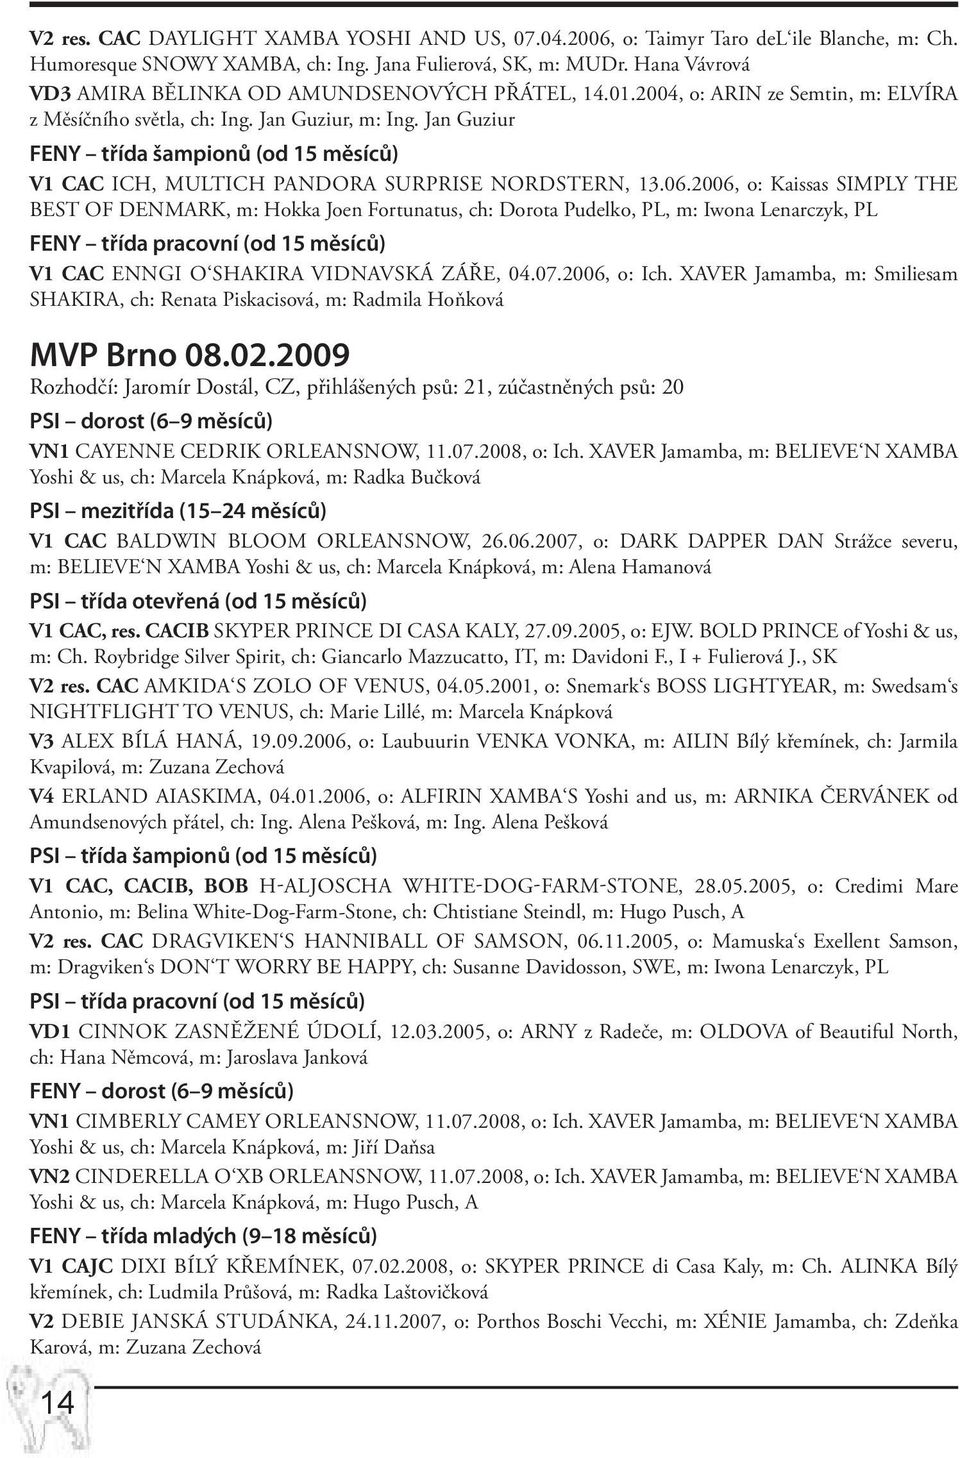 Jan Guziur FENY třída šampionů (od 15 měsíců) V1 CAC Ich, multich PANDORA SURPRISE Nordstern, 13.06.